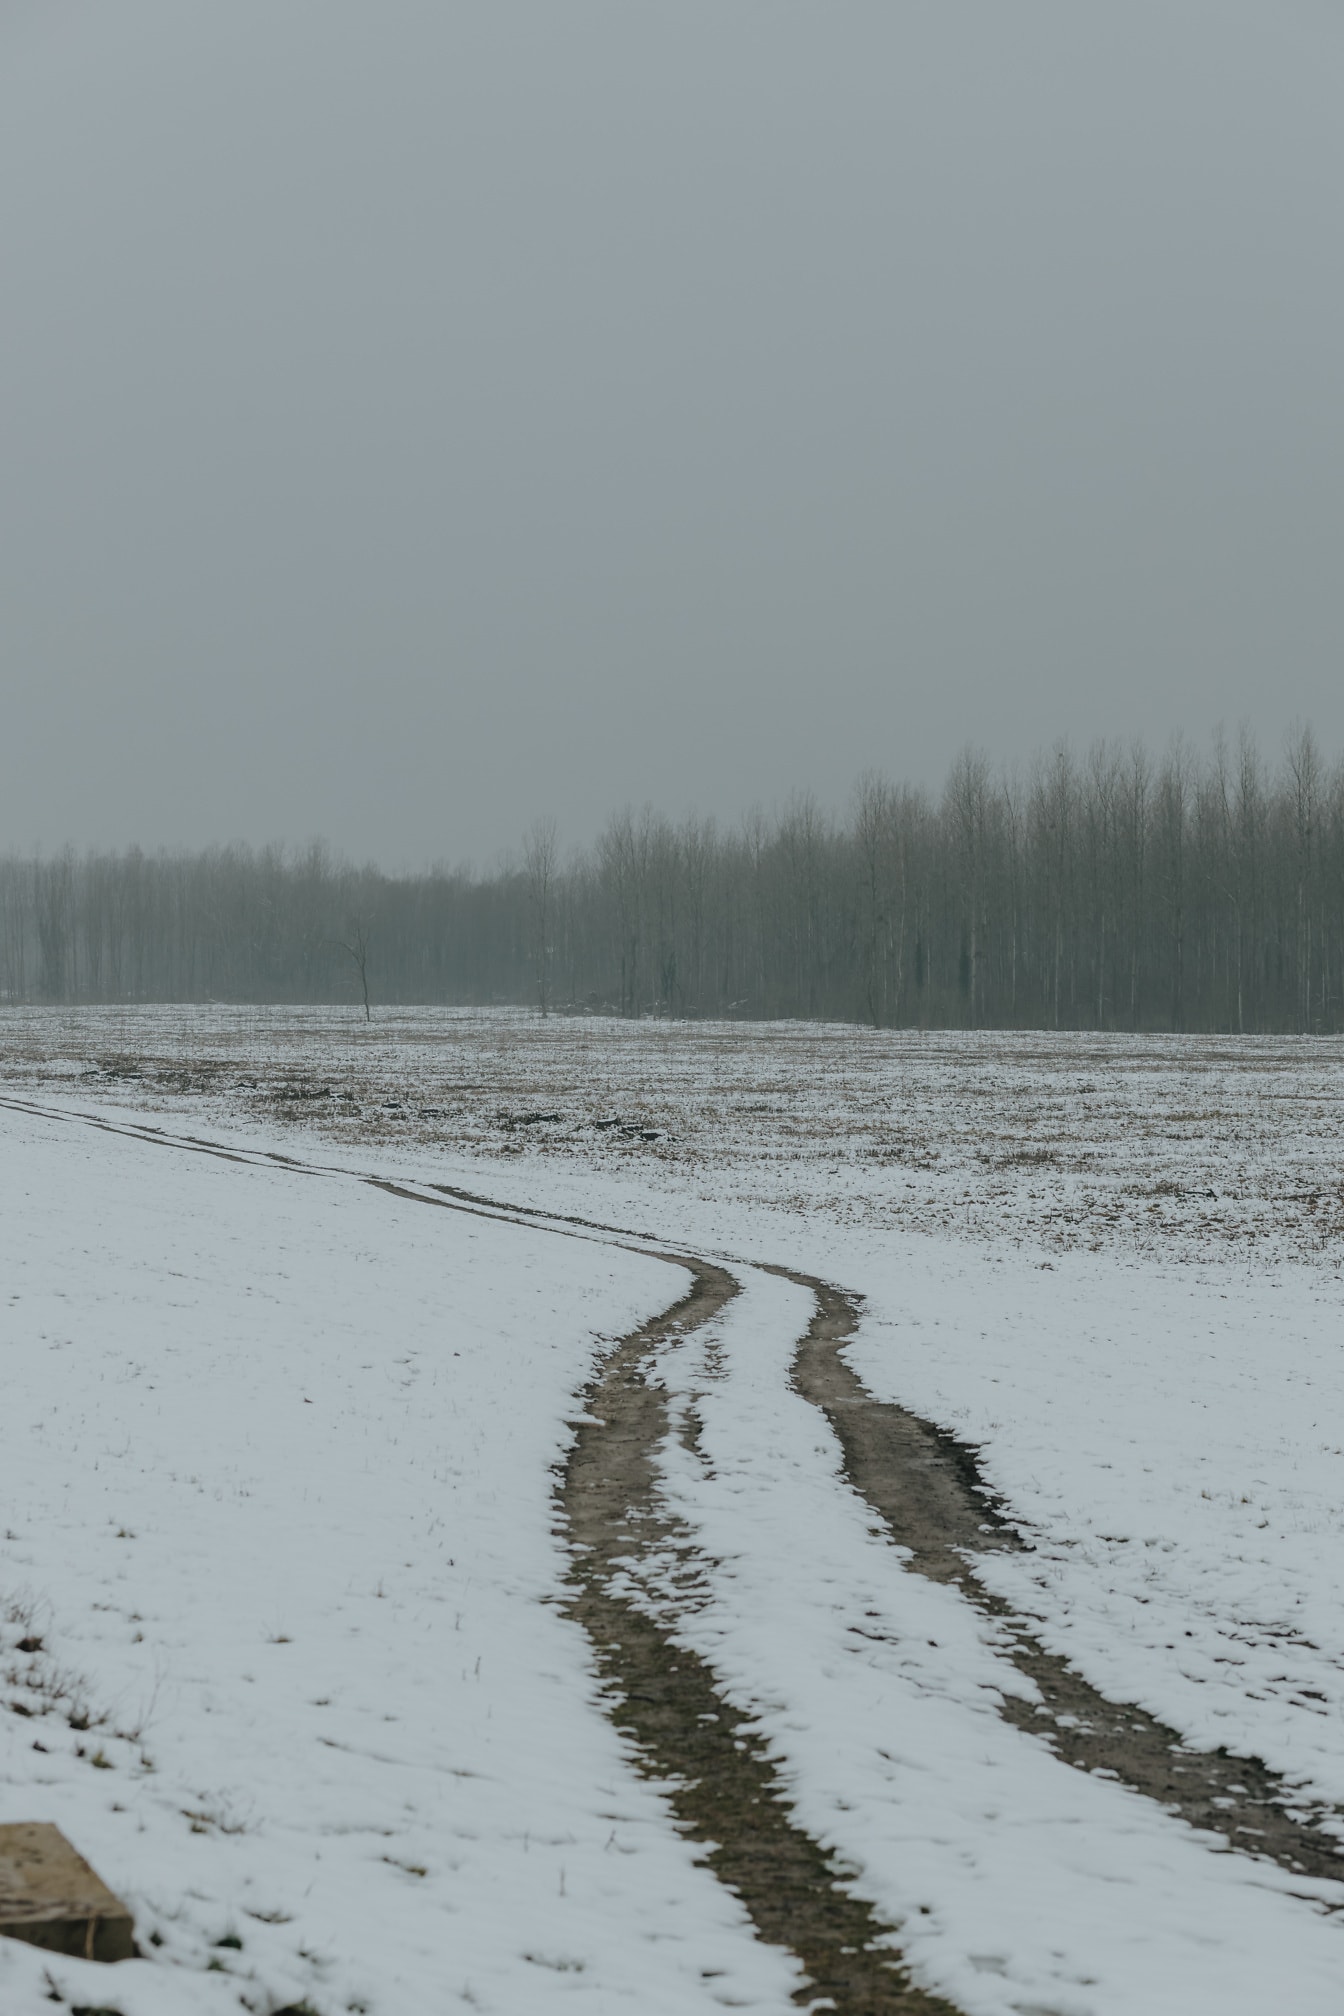 Beskidt snedækket vej i landdistrikterne